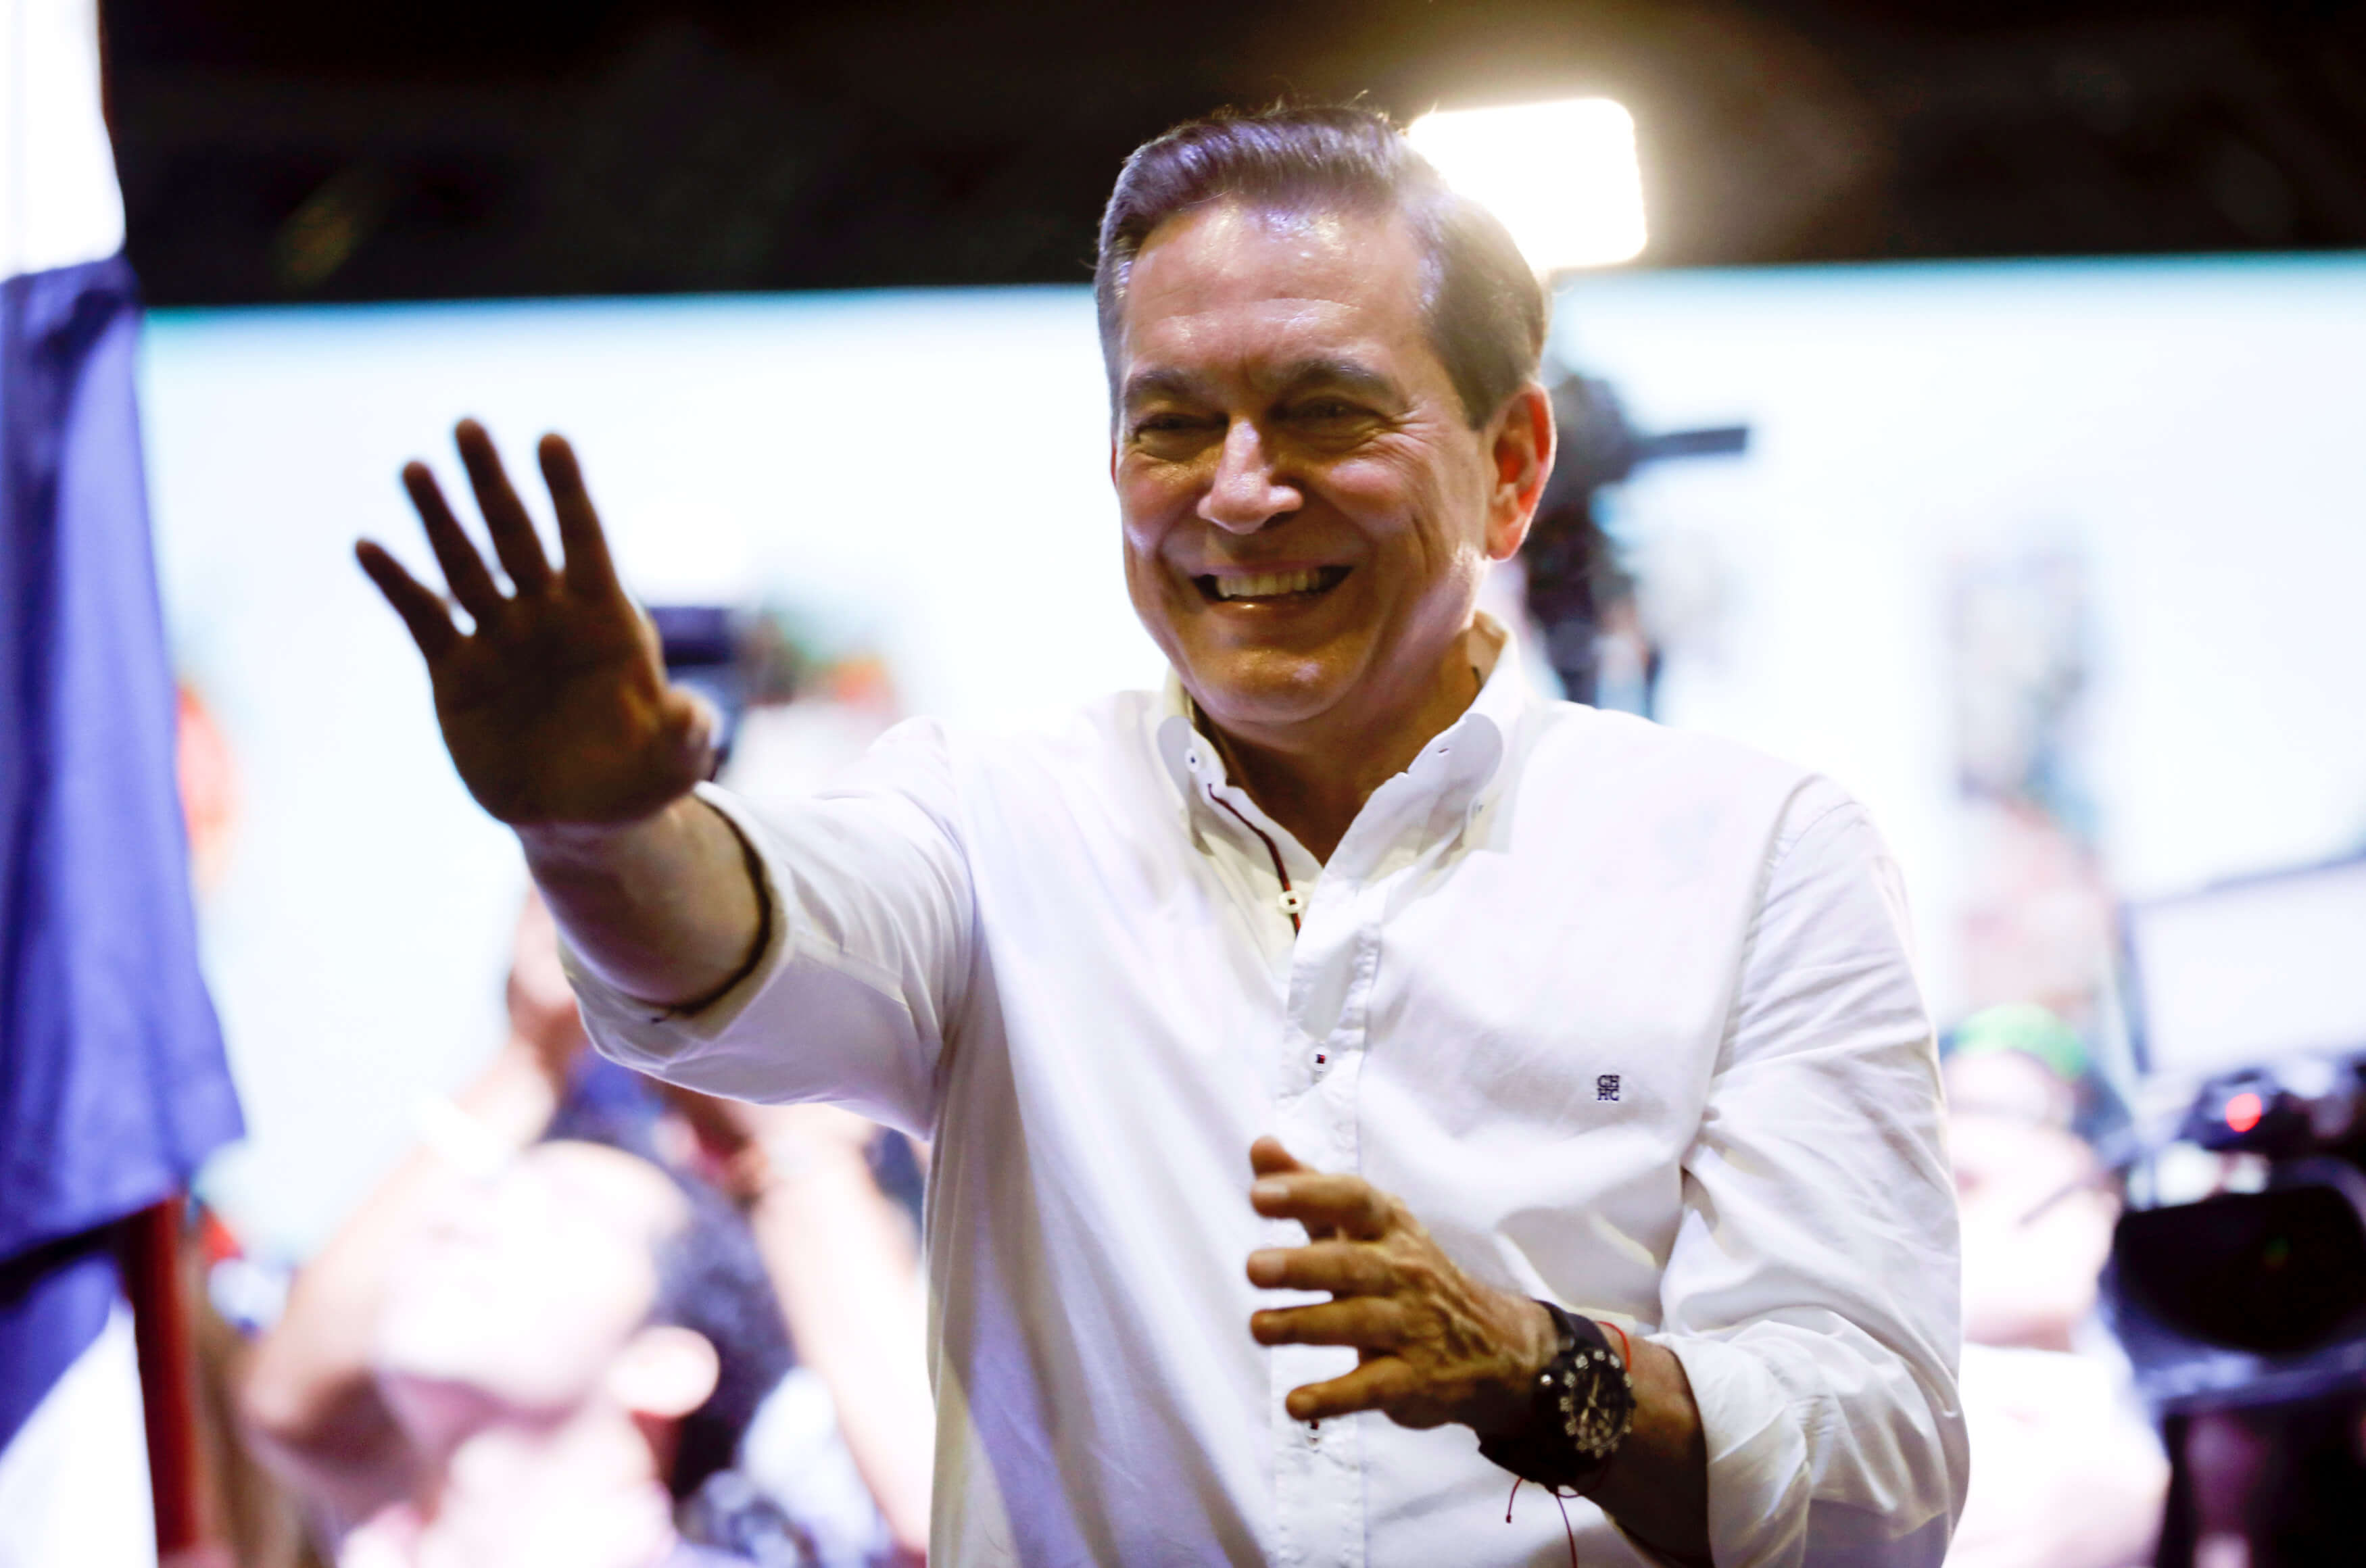 Παναμάς: Έλληνας ο νέος πρόεδρος! Η πορεία του “Νίτο” προς την κορυφή